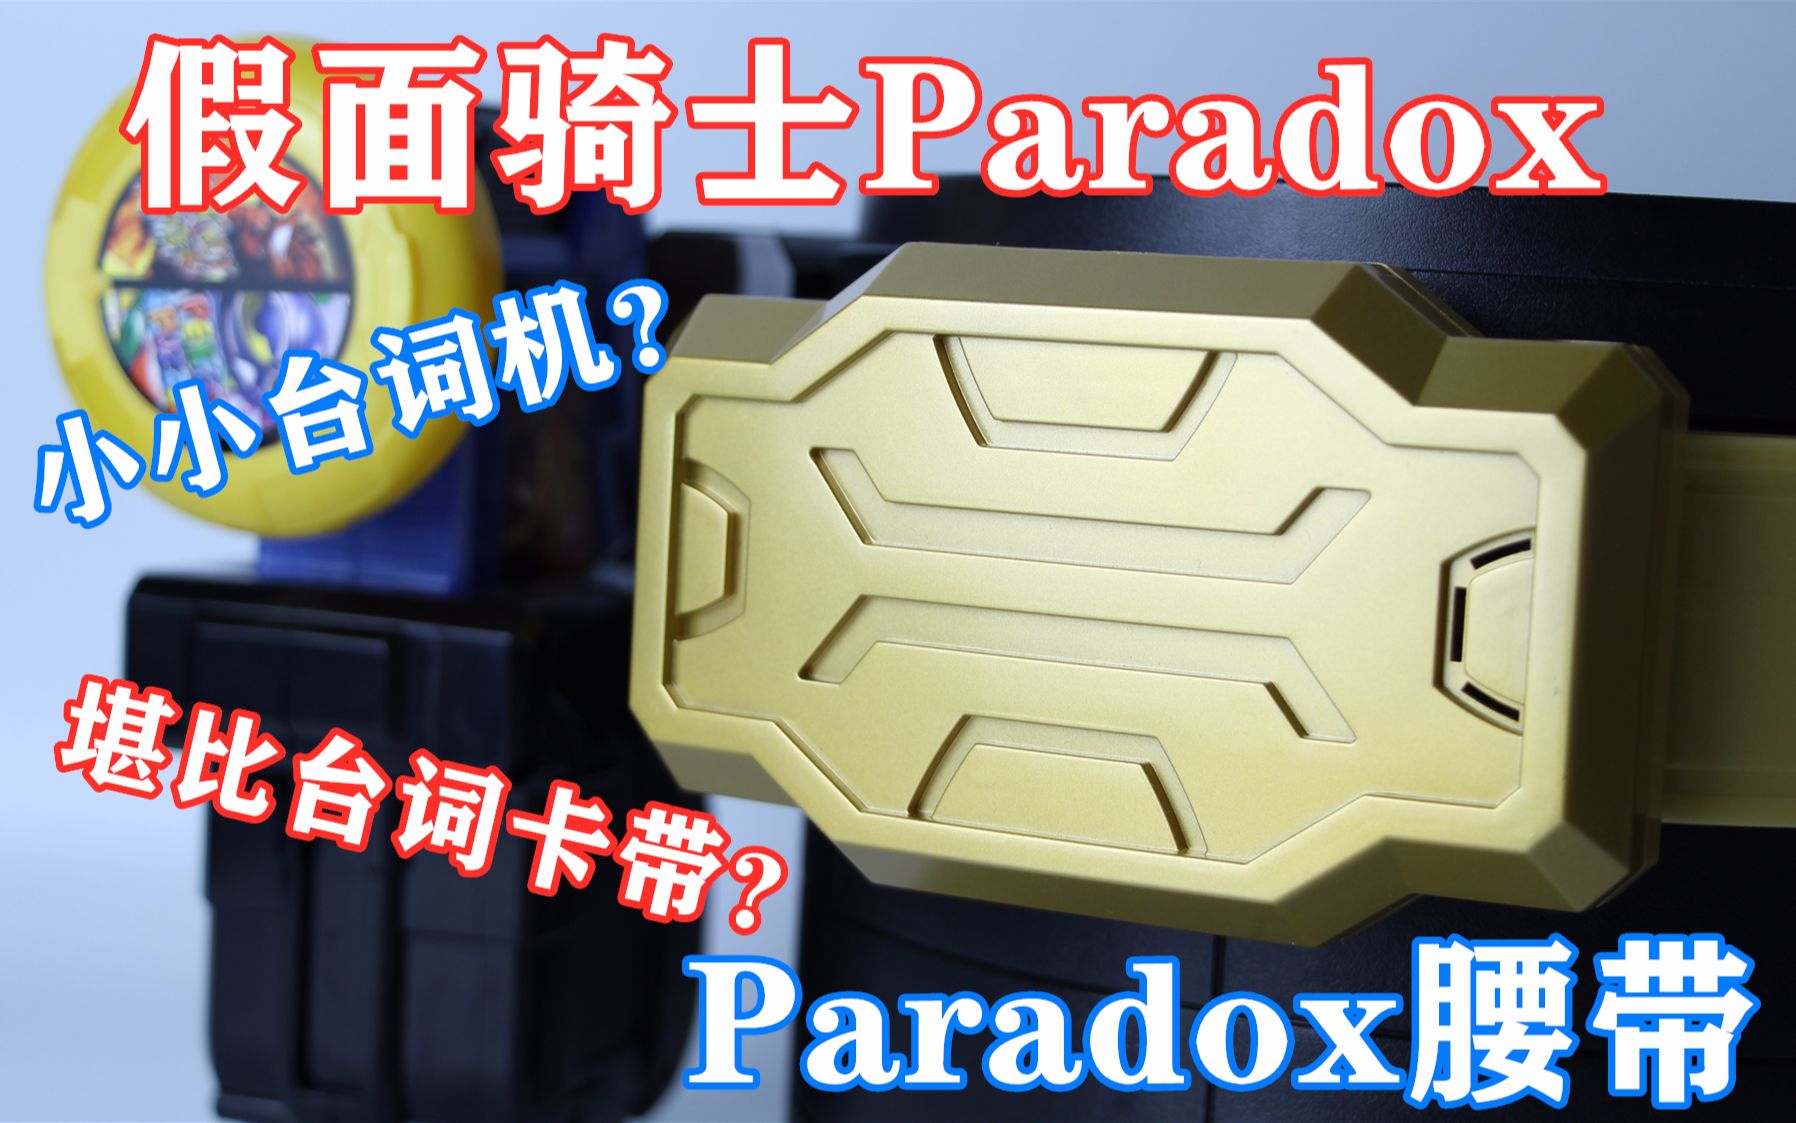 堪比台词卡带的配件 假面骑士Paradox 帕拉德 DX PARA-DX腰带【味增的把玩时刻 第26期】